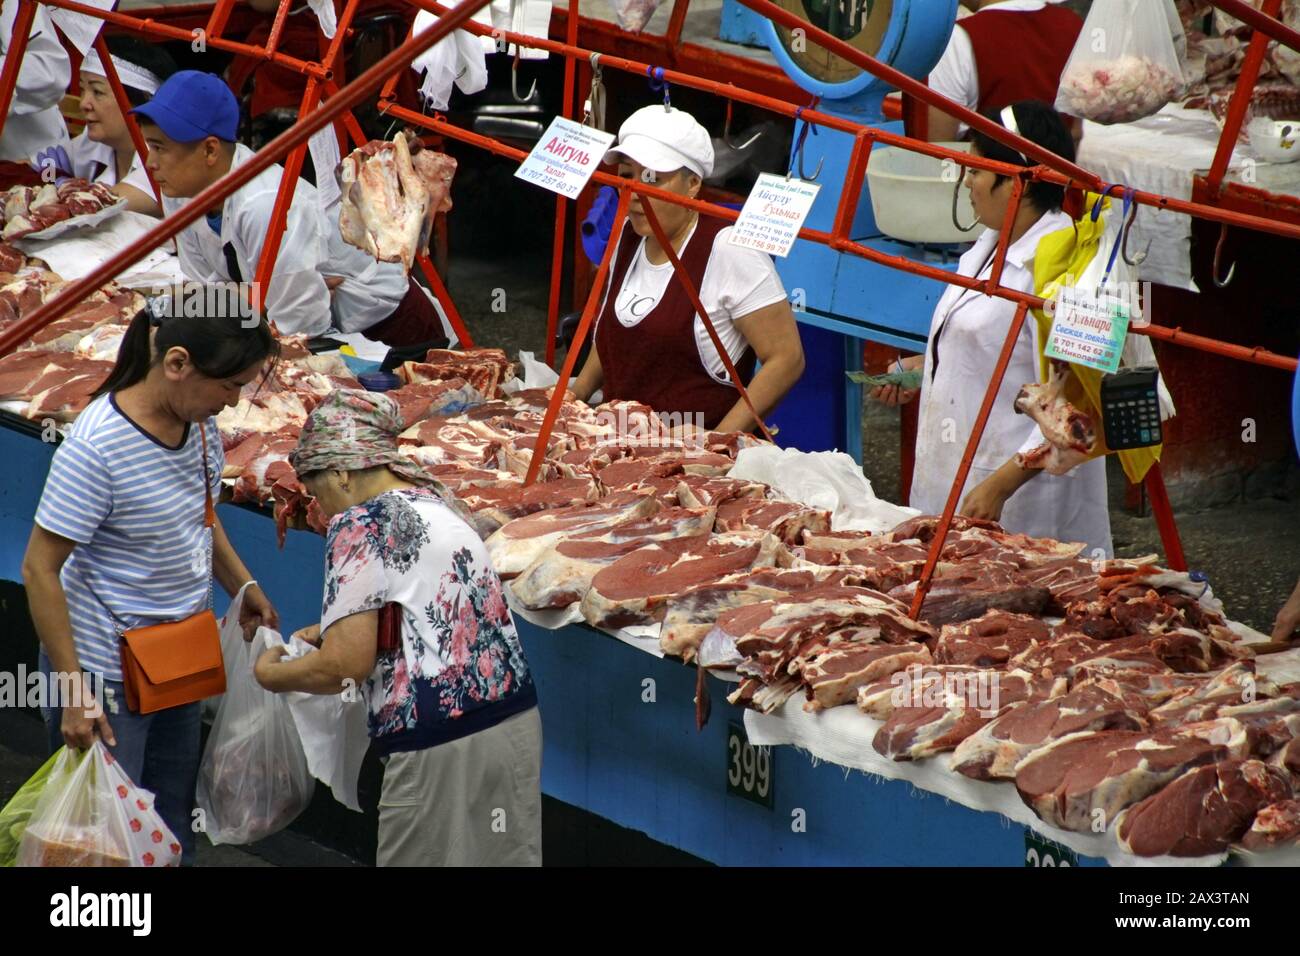 ALMATY, KAZAKHSTAN - Sep 09, 2019: 09 September 2019 - Almaty, Kazakhstan: People in the meat section of the Green Bazaar in Almaty, Kazakhstan, buyin Stock Photo